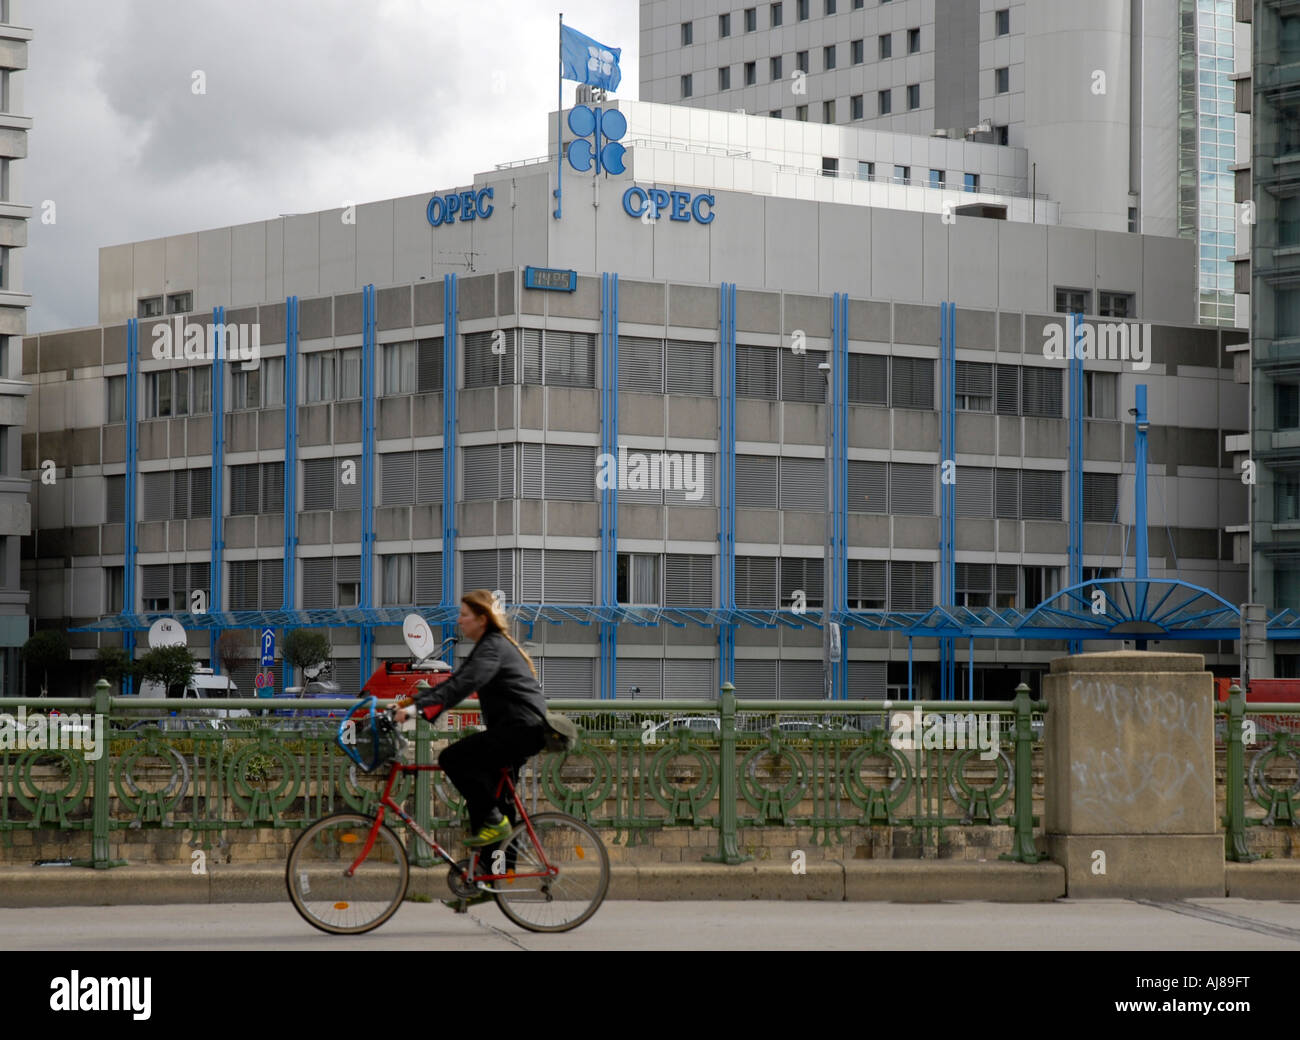 OPEC building, Vienna, Austria Stock Photo